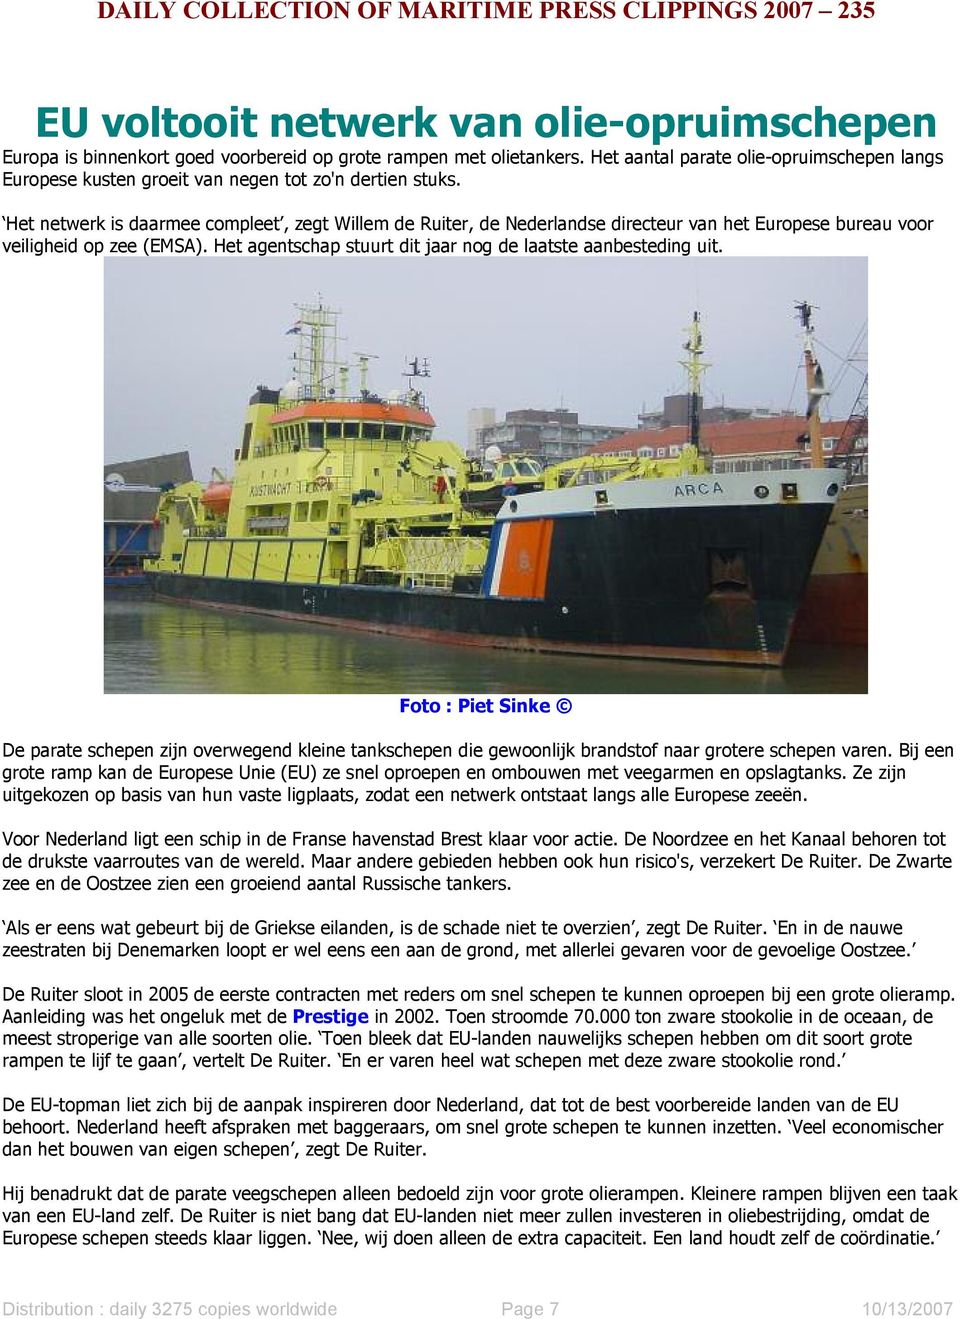 Het netwerk is daarmee compleet, zegt Willem de Ruiter, de Nederlandse directeur van het Europese bureau voor veiligheid op zee (EMSA). Het agentschap stuurt dit jaar nog de laatste aanbesteding uit.